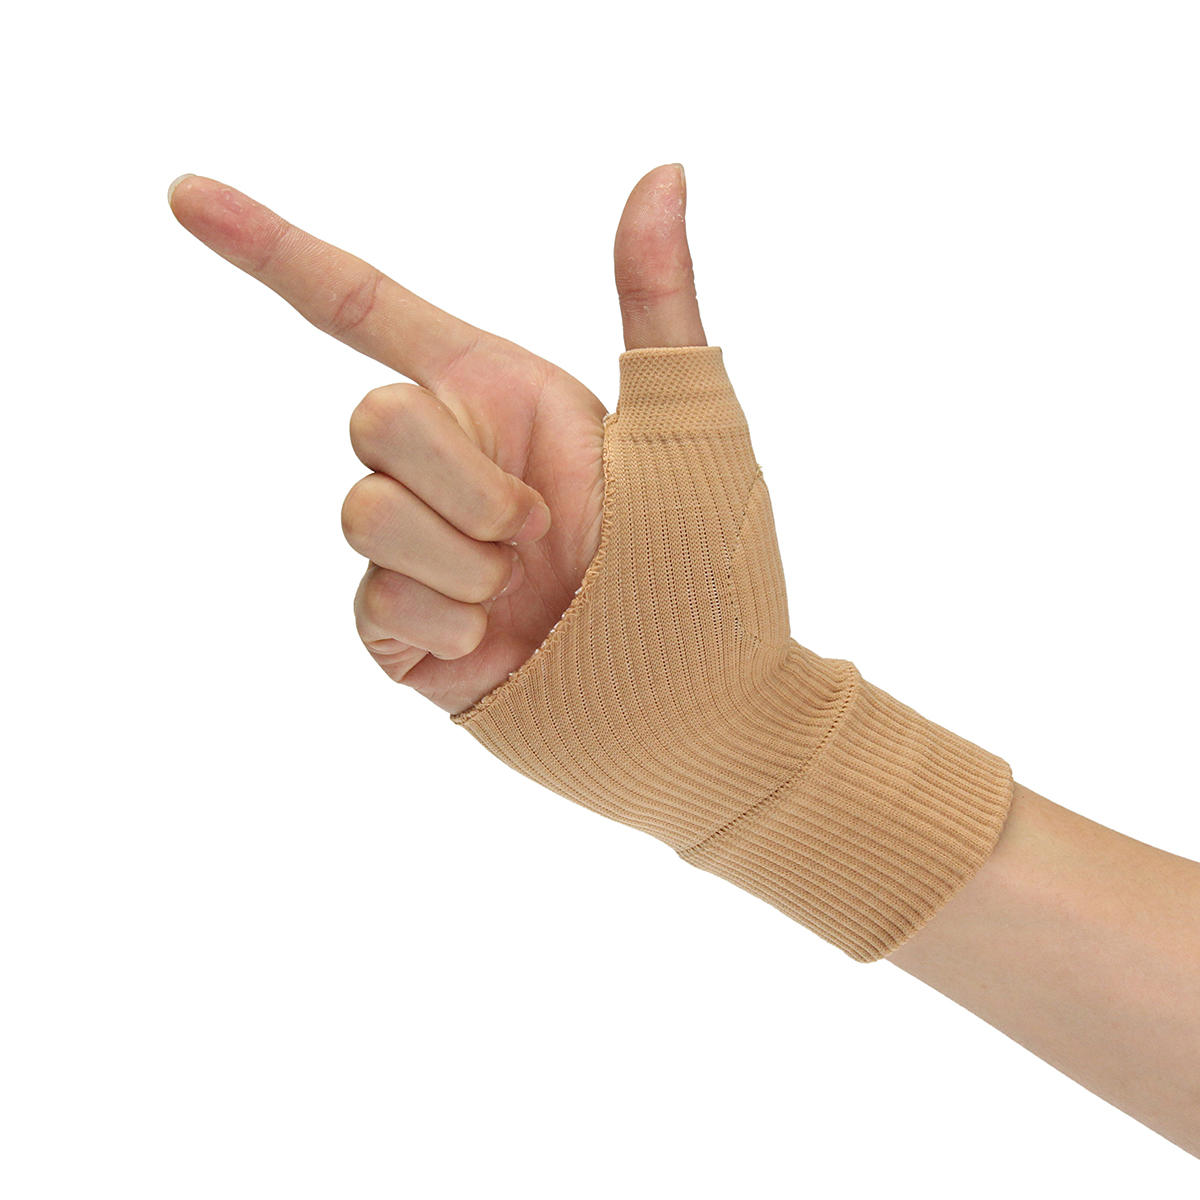 

Soft Ctton Поддержка большого пальца руки Spica на запястье Brace Процедура для растяжения связок